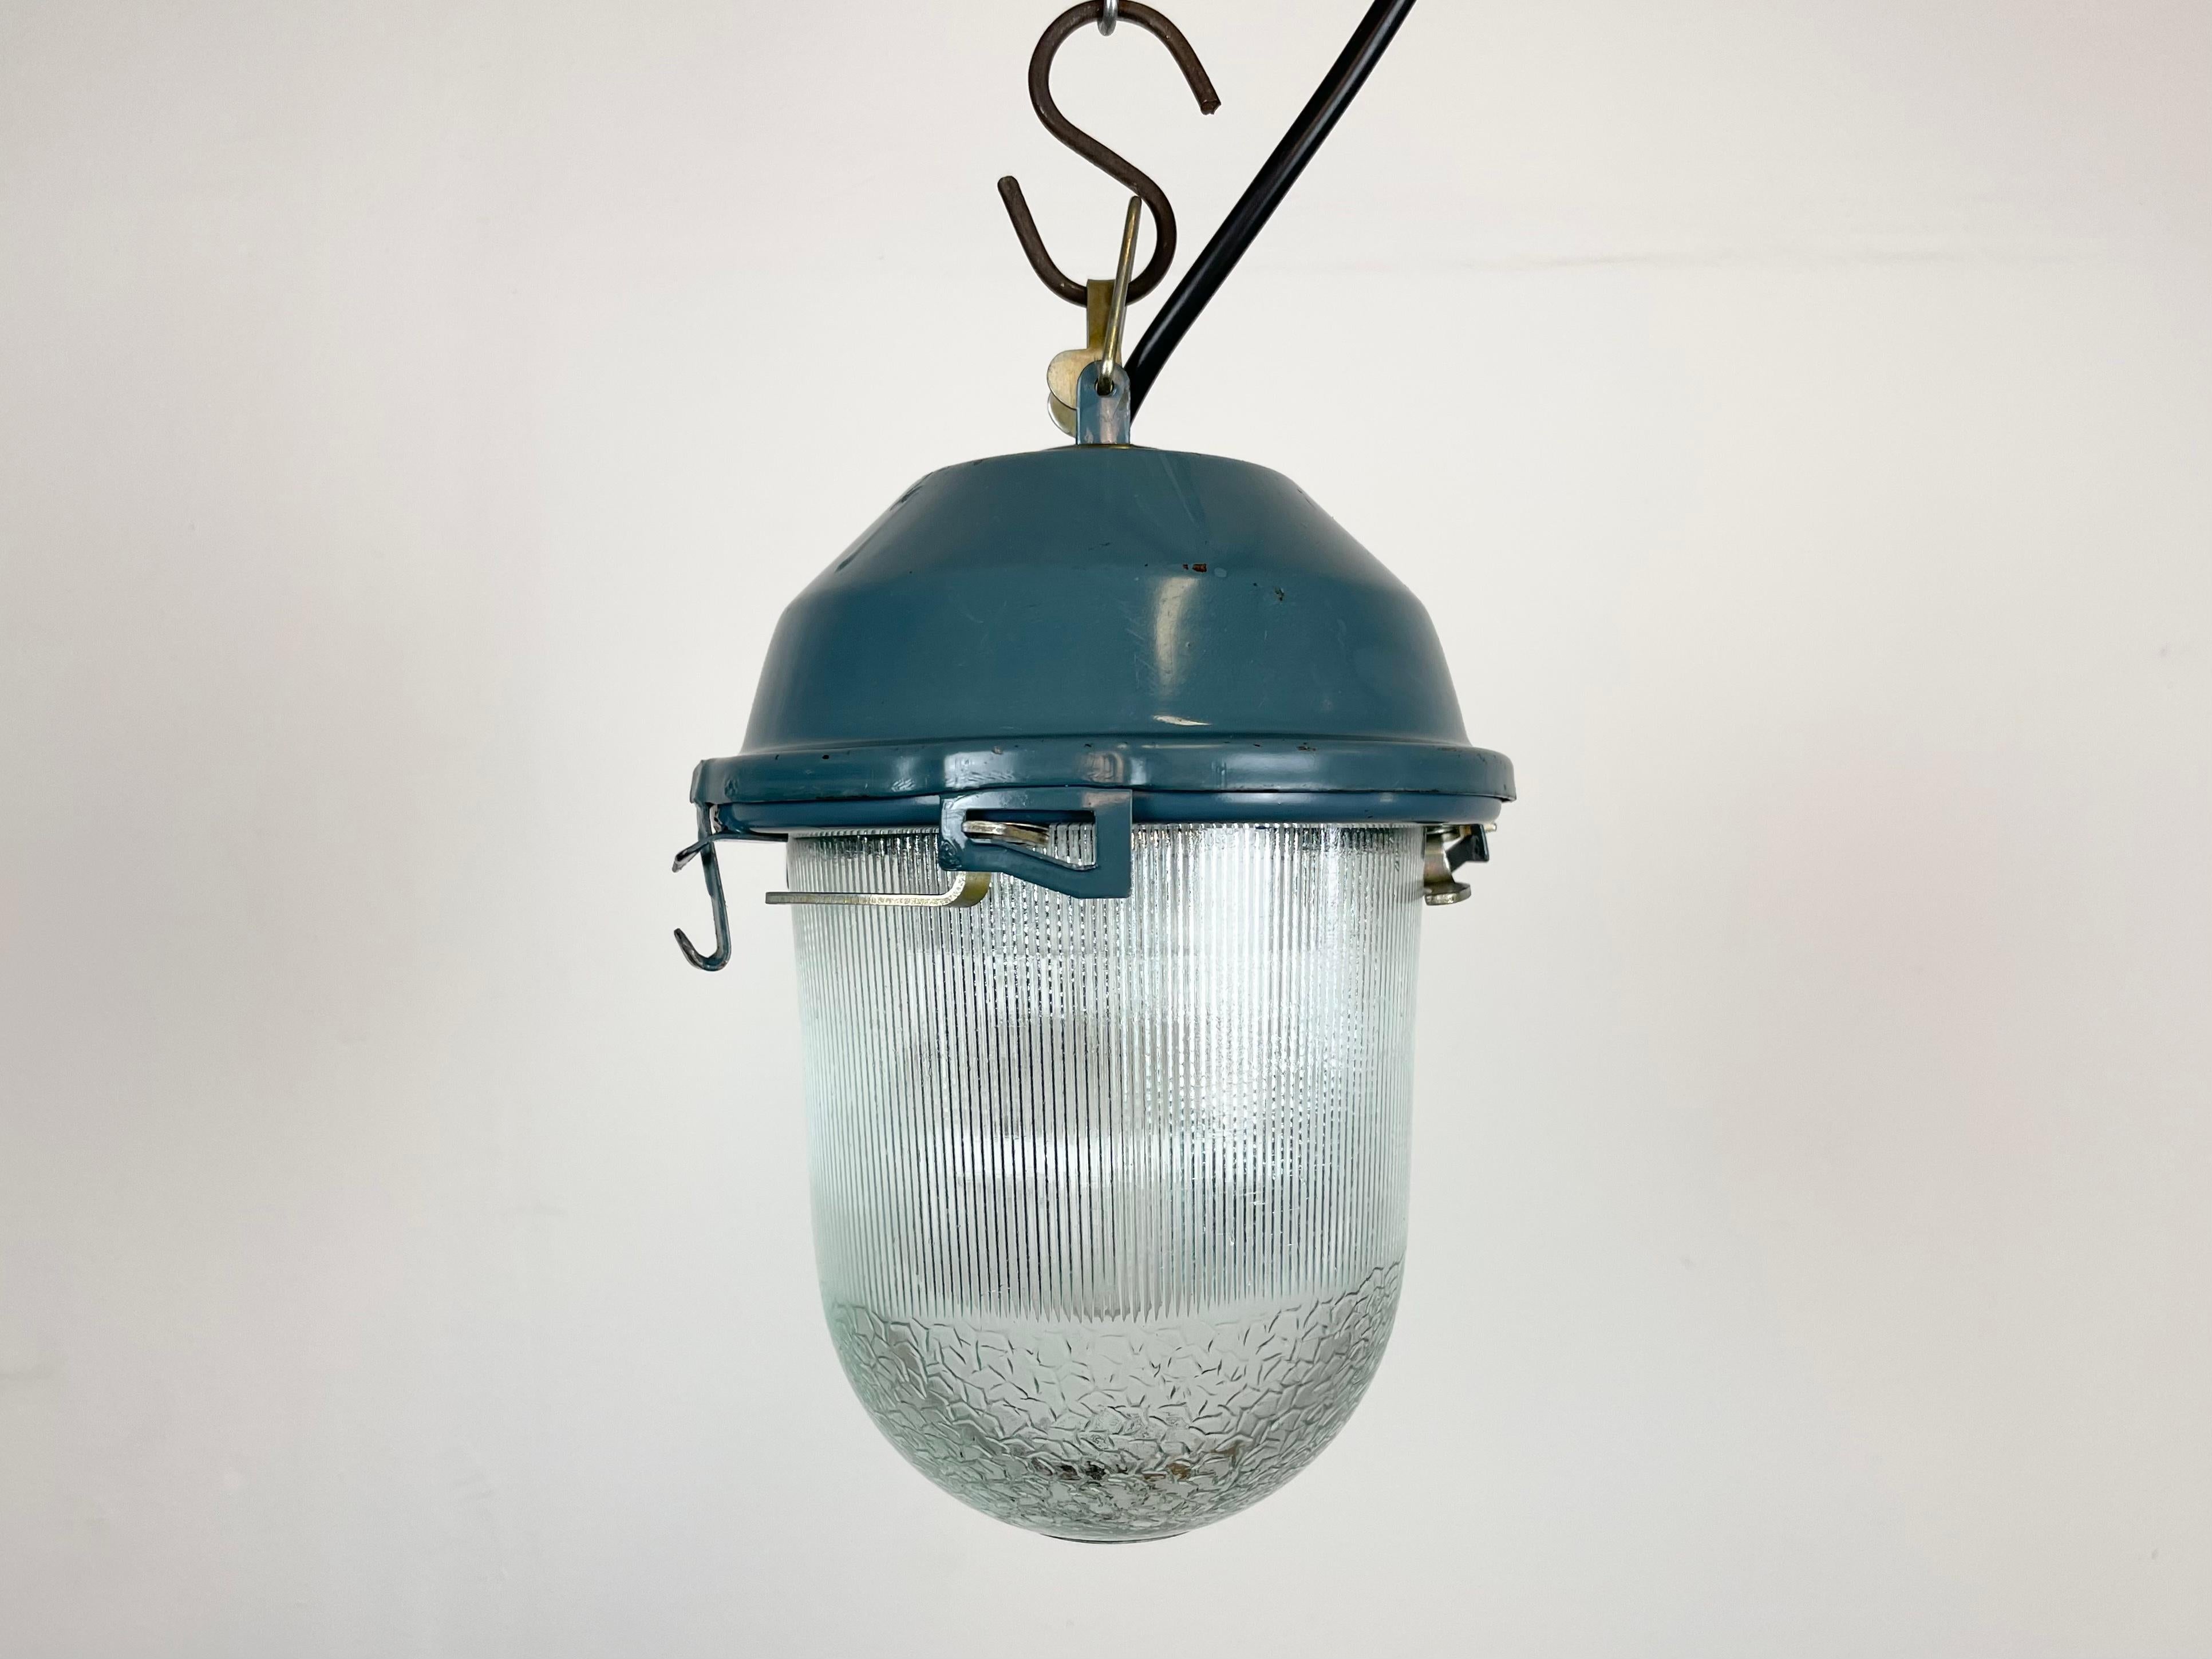 - Lampe industrielle vintage des années 1970 
- Fabriqué dans l'ancienne Union soviétique
- Top en fer bleu
- Couvercle de verre dépouillé
- La douille nécessite des ampoules E 27 
- Nouveau fil 
- Diamètre : 15 cm
- Poids : 1,5 kg.